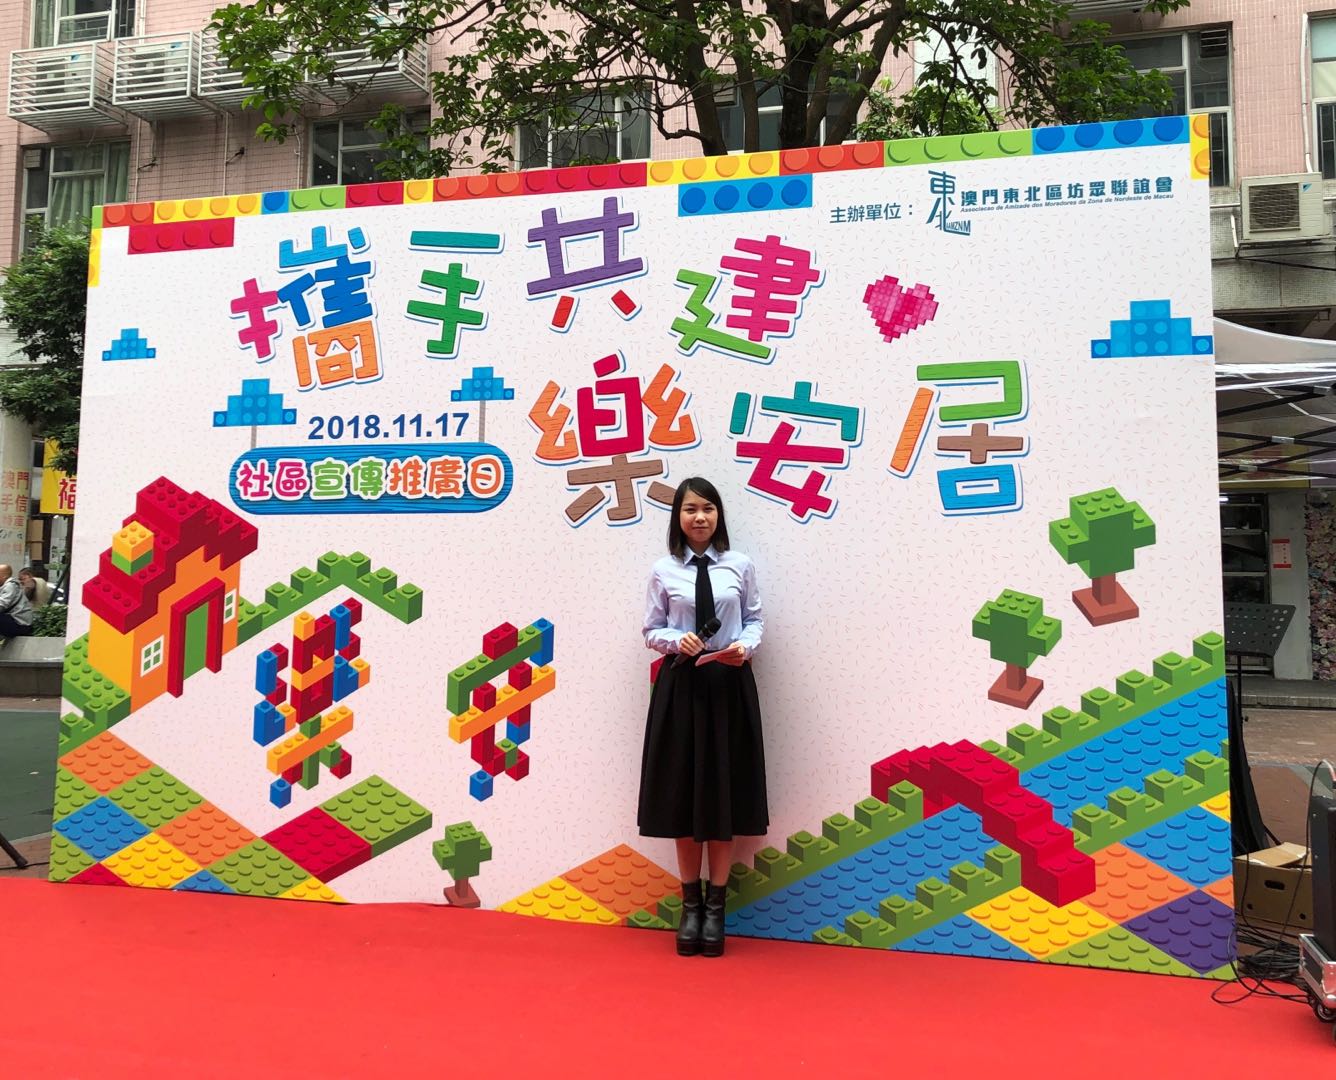 Rainbow 陳彩虹之司儀主持紀錄: “攜手共建樂安居”社區宣傳推廣日